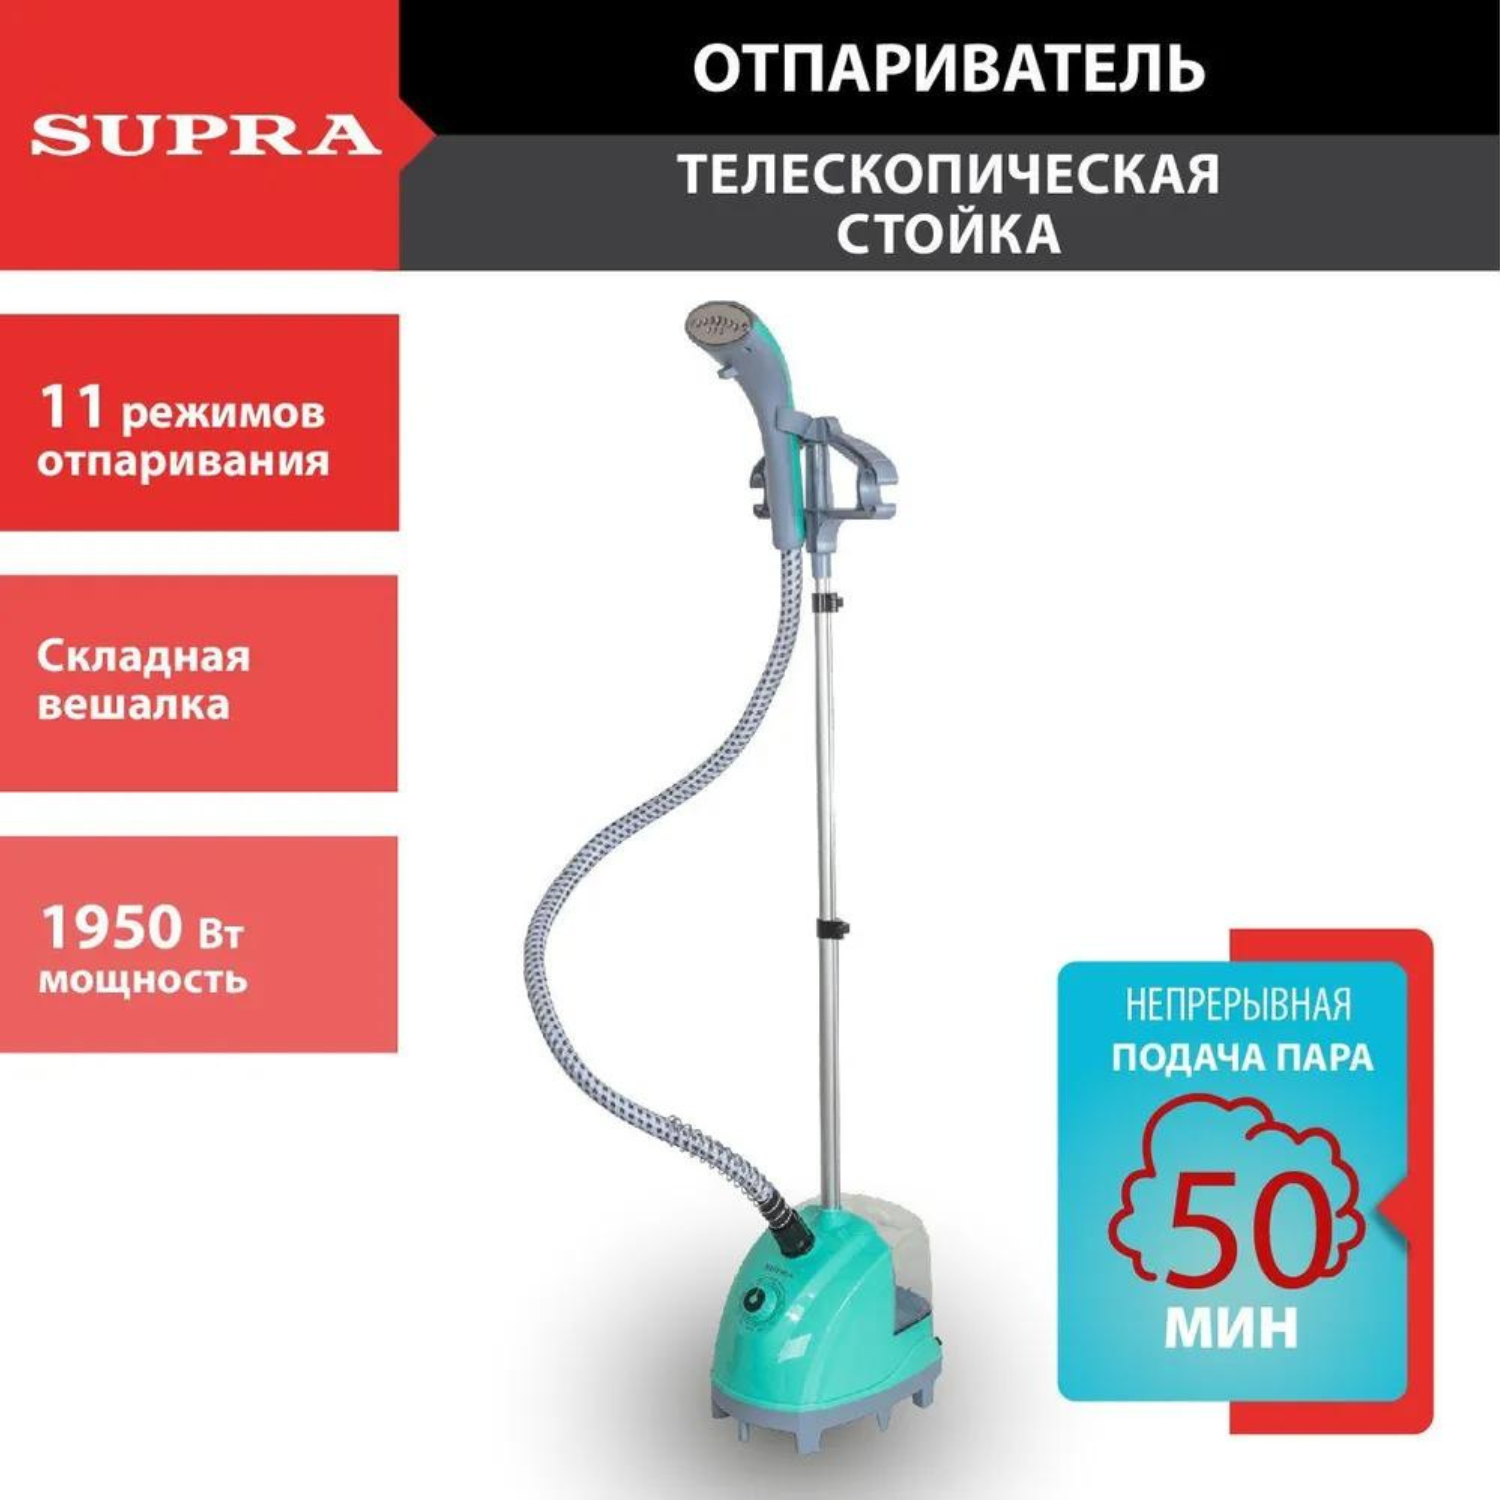 Вертикальный отпариватель Supra SBS-170 1.3 л голубой вертикальный отпариватель supra sbs 170 1 3 л голубой